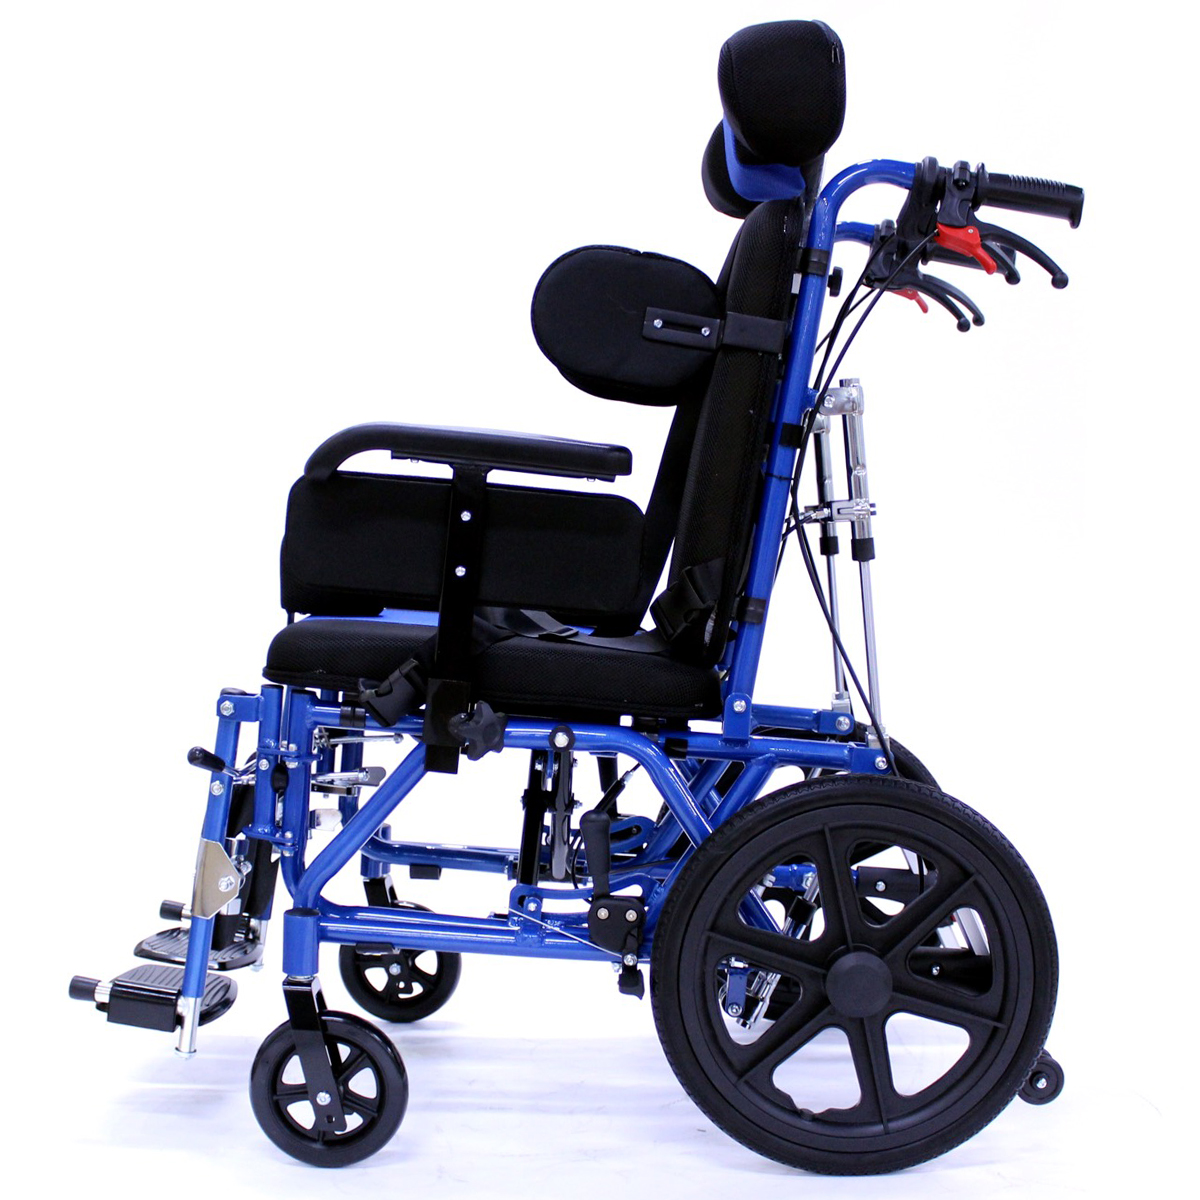 Αναπηρικό αμαξίδιο παιδικό αλουμινίου 36 cm AZURA Ι 0811983